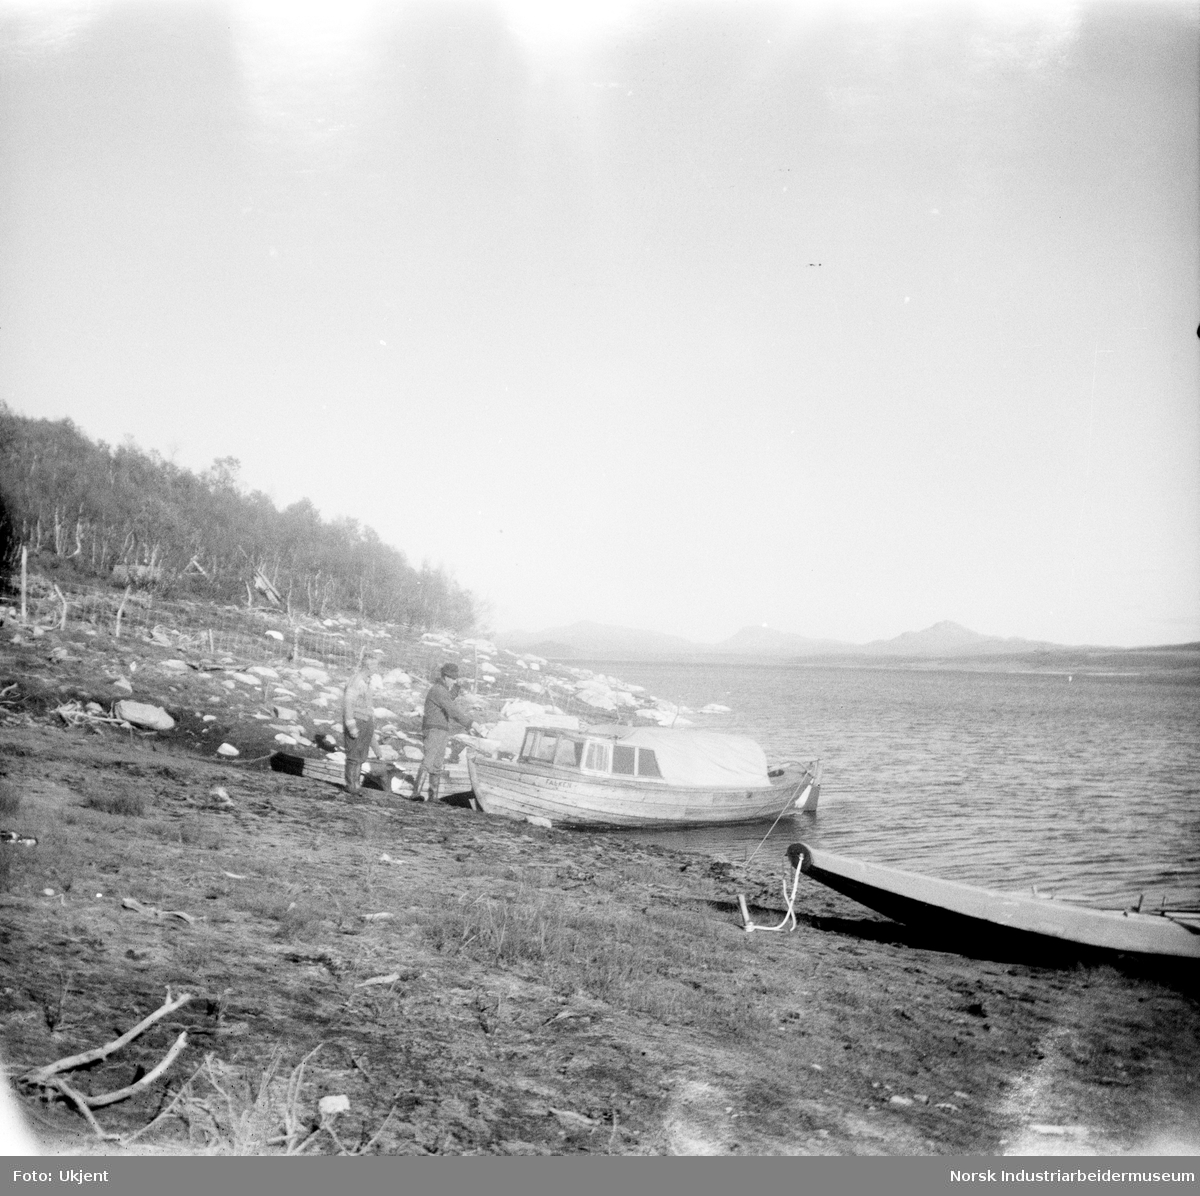 Olav O. Vågen og Trygve O. vågen ved båten "Falken" som tilhører Trygve. Båten ligger i vannkanten ved siden av en pråm på Øst-Førnes, Møsstrond